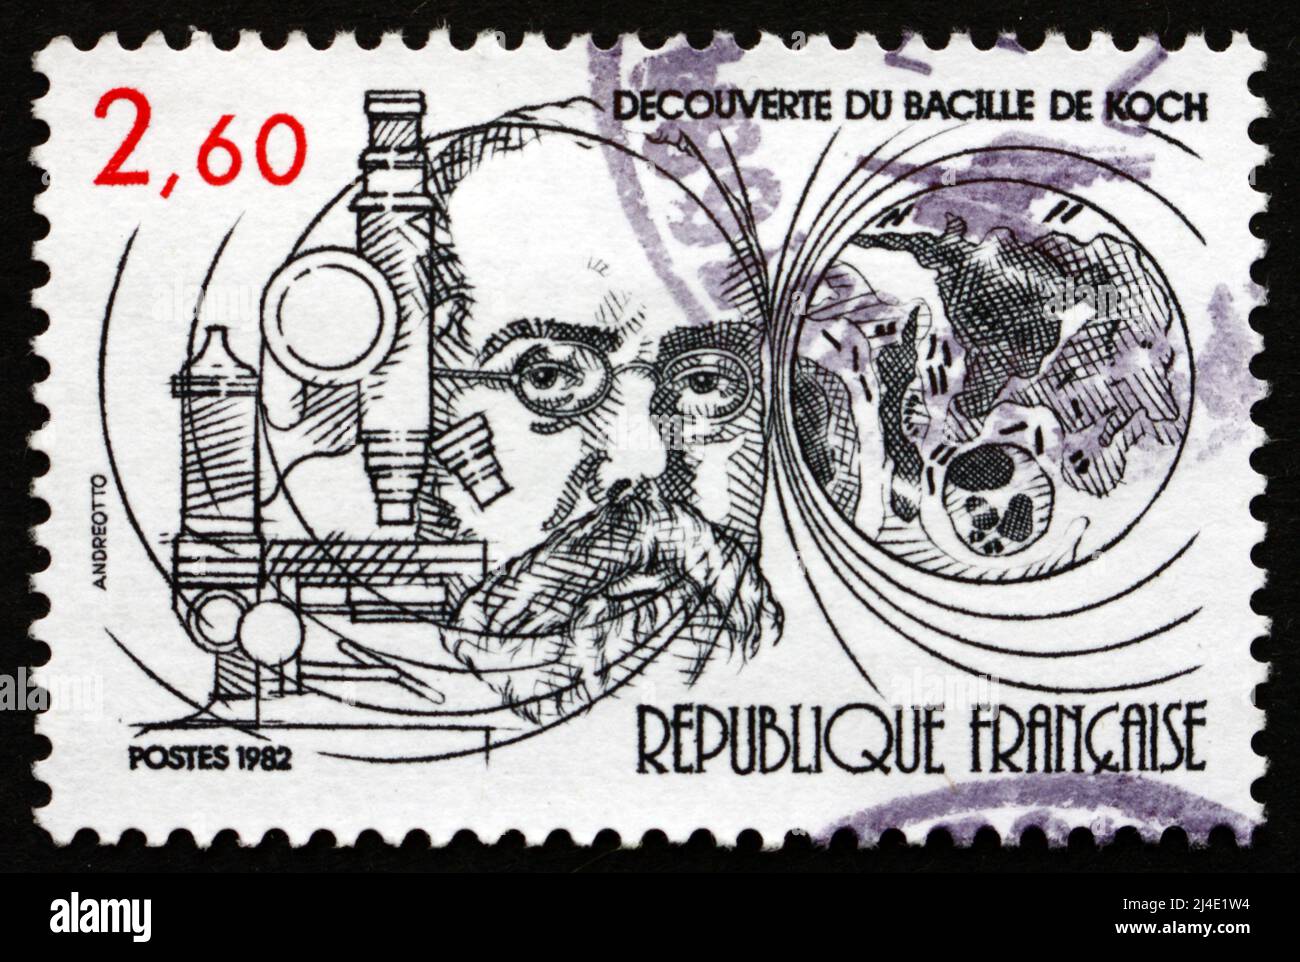 FRANCIA - CIRCA 1982: Un francobollo stampato in Francia mostra TB Bacillus scoperto da Robert Koch, Centenario, circa 1982 Foto Stock